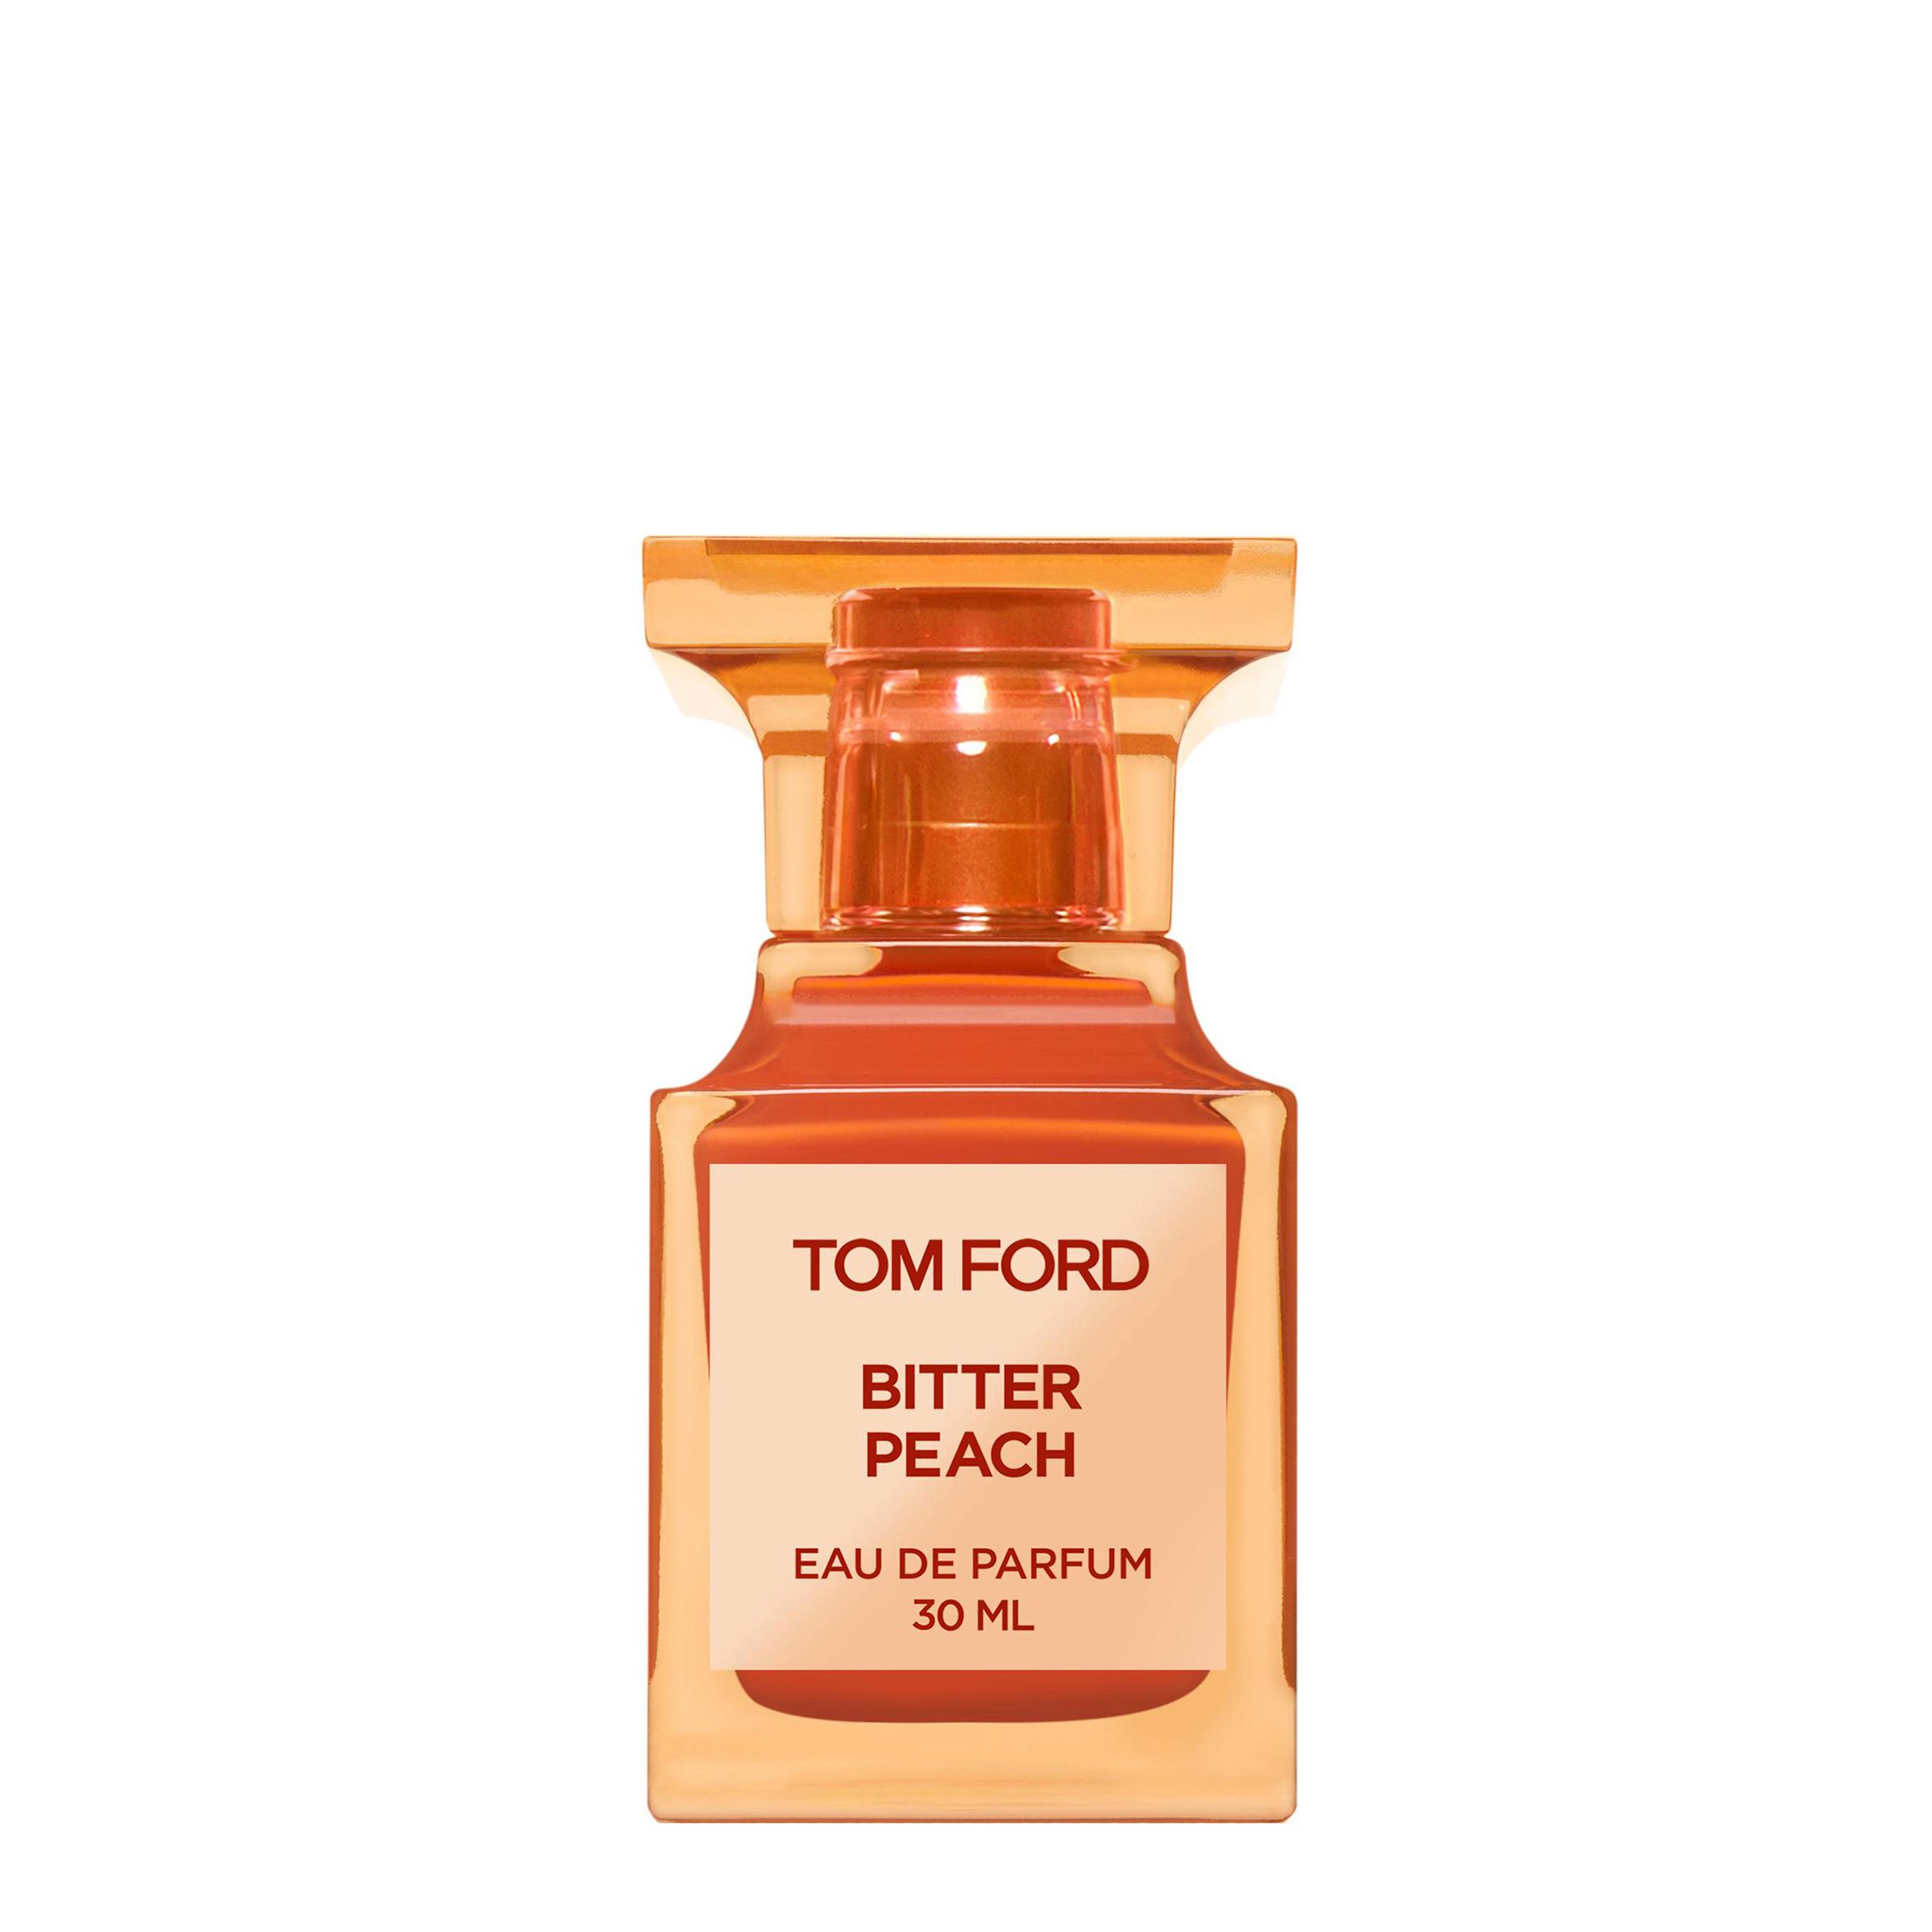 Вода парфюмерная Tom Ford Bitter Peach, унисекс, 30 мл tom ford ароматическая свеча bitter peach candle